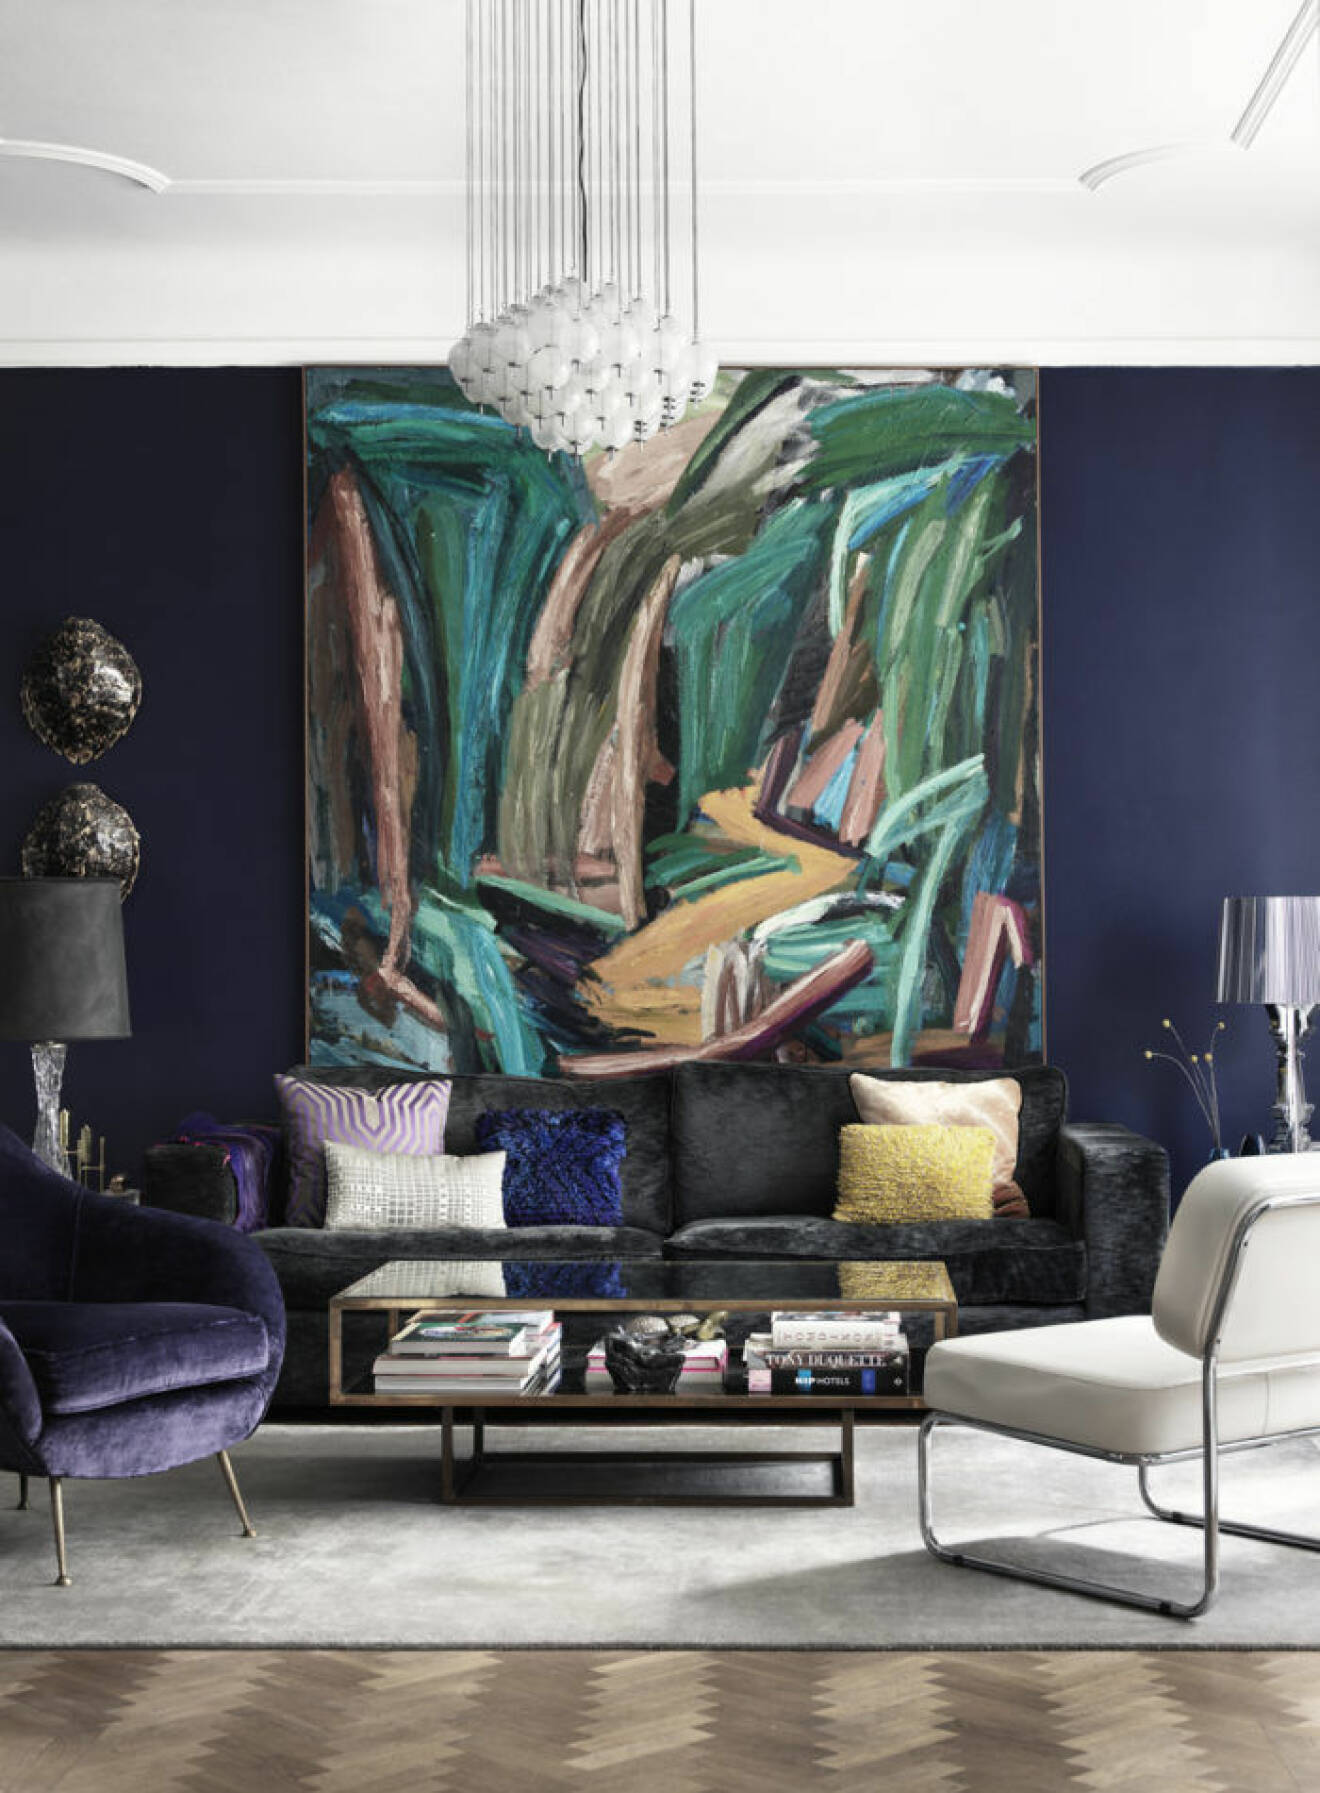 Stor abstrakt tavla i vardagsrum med färgglada sammetskuddar i mörkgrå sammetssoffa.